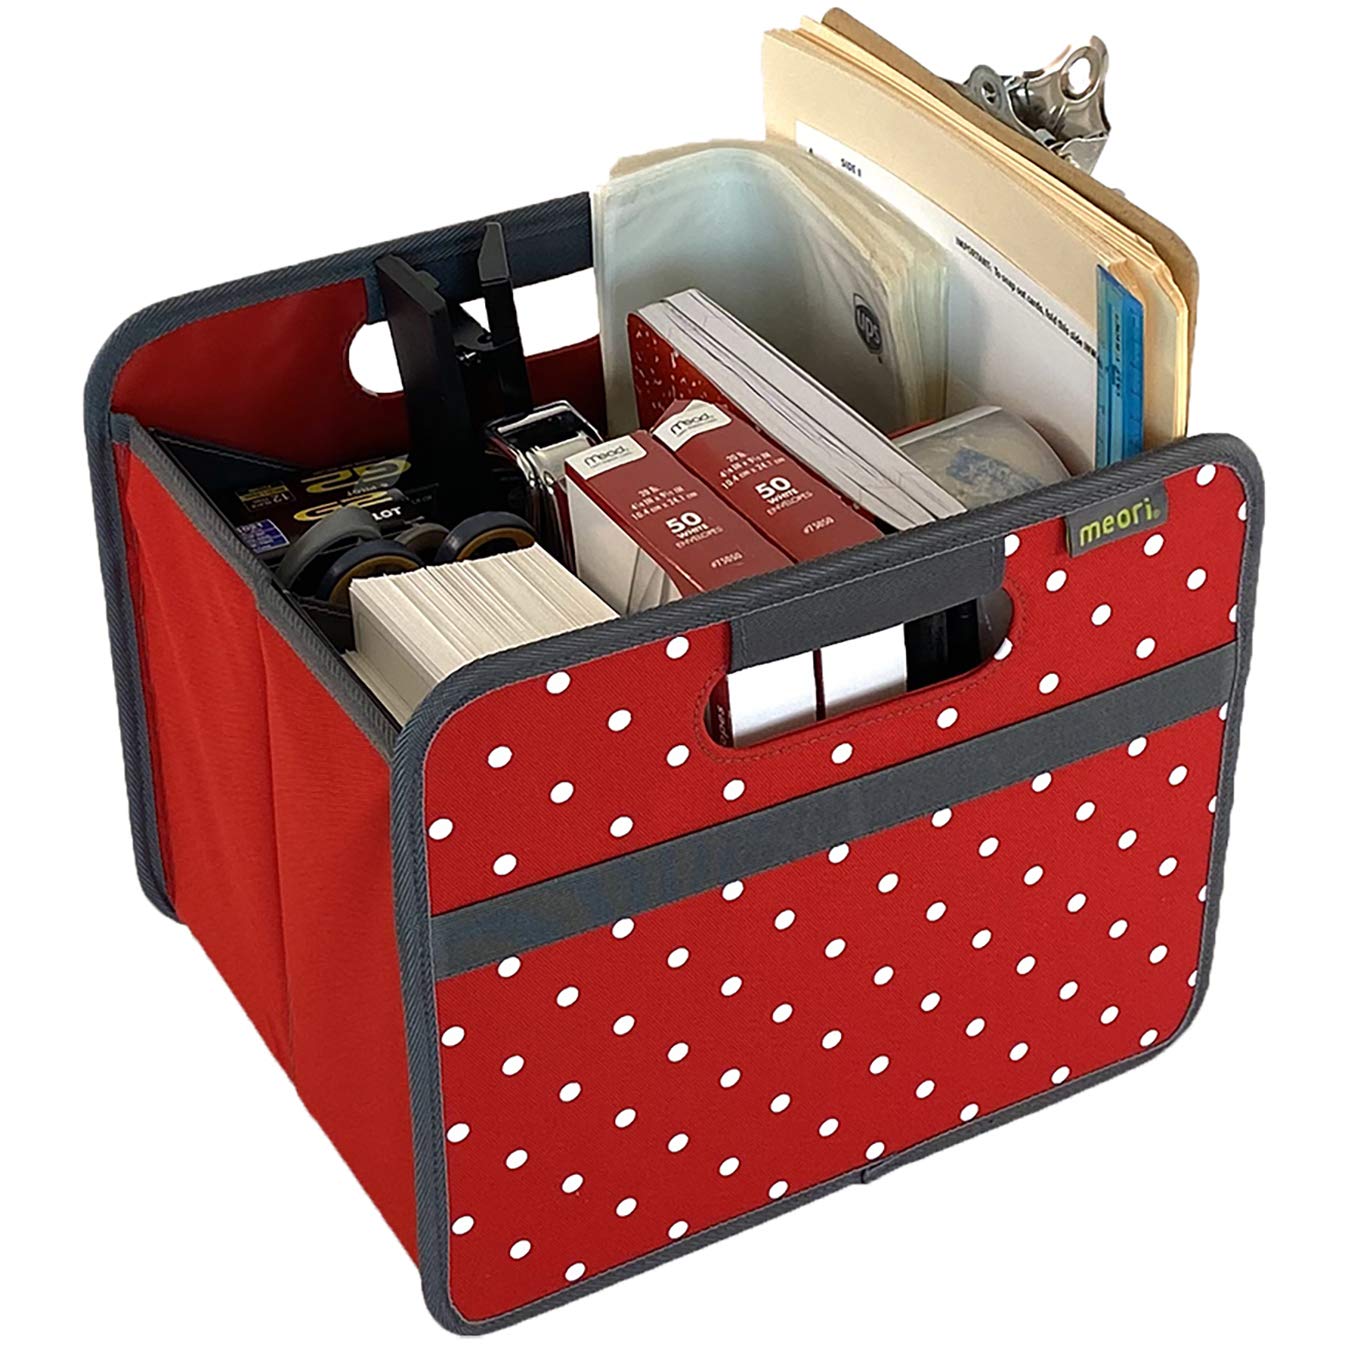 meori Faltbox Small in Rot mit Punkten - Stabile Klappbox S mit Griffen - perfekte Allzweck Aufbewahrungslösung - Tragkraft bis 30 kg - A100063 - 32 x 26,5 x 27,5 cm